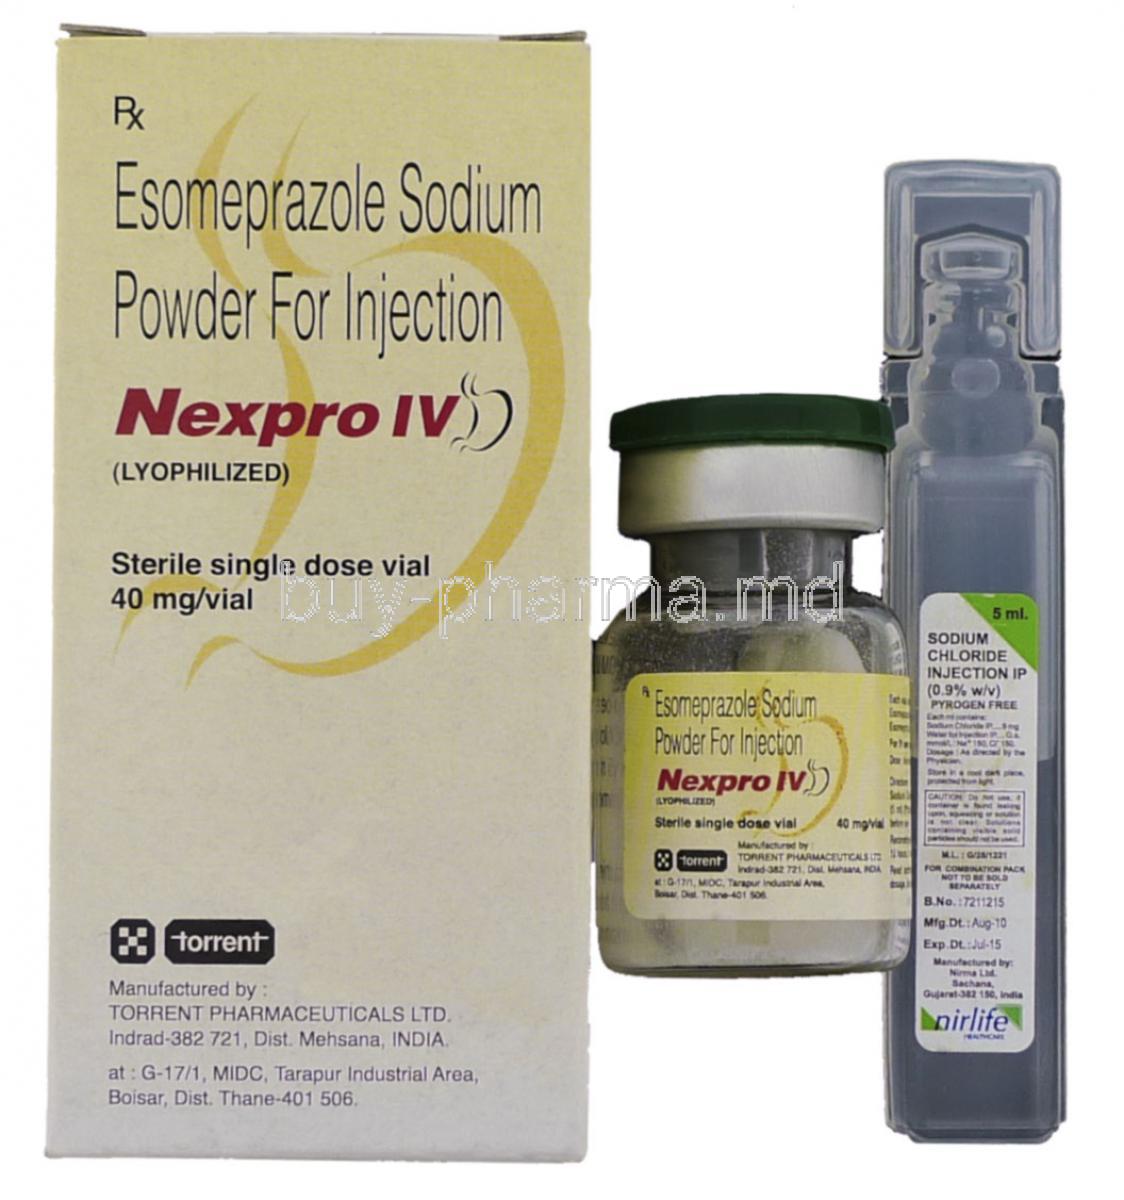 Nexpro IV, Generic Nexium, Esomeprazole Injection